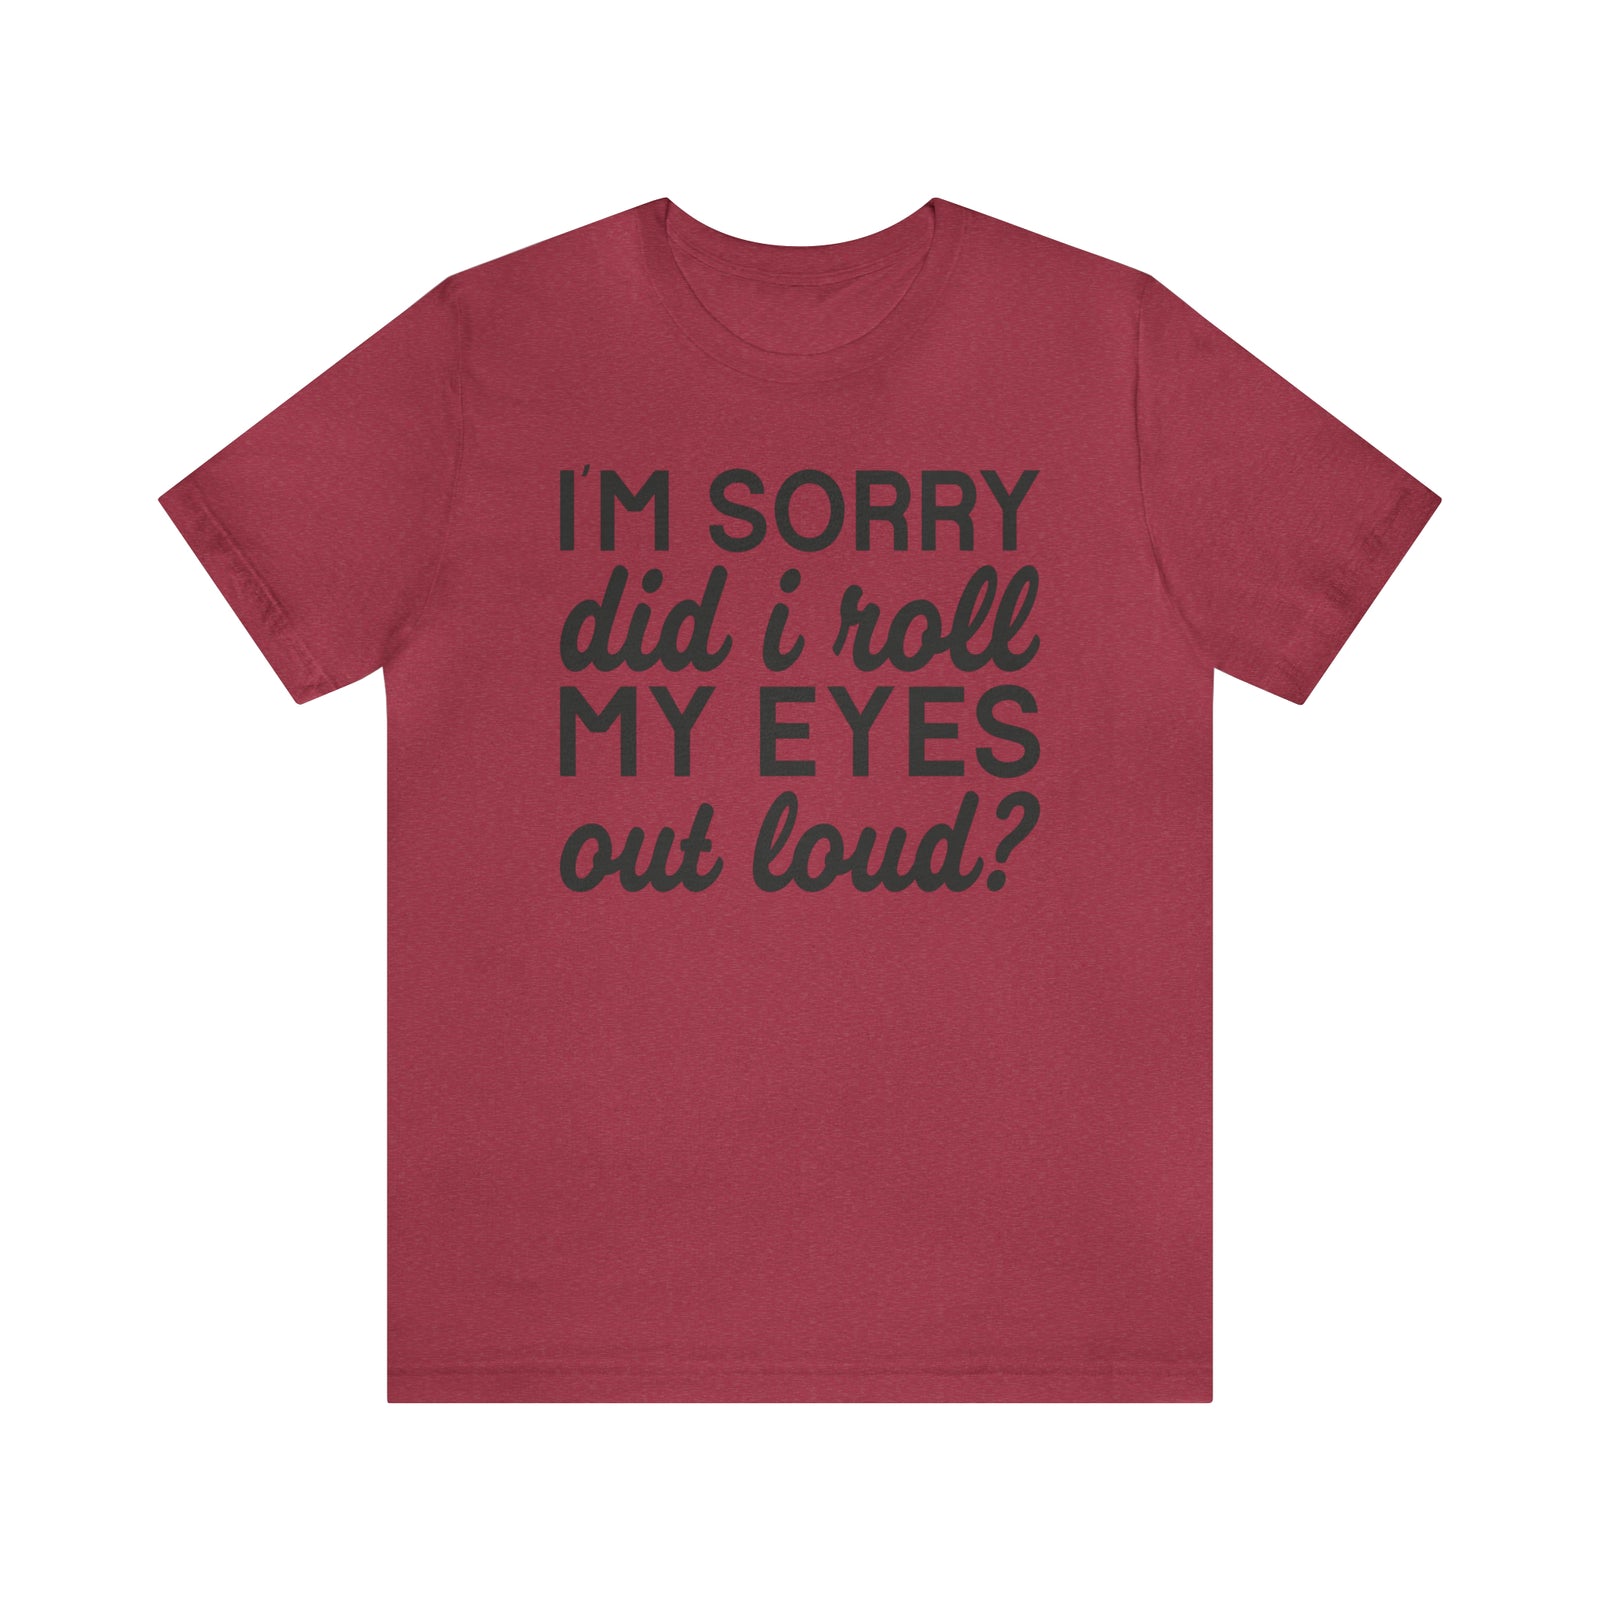 Roll my eyes T-shirt - Sarcasm Swag